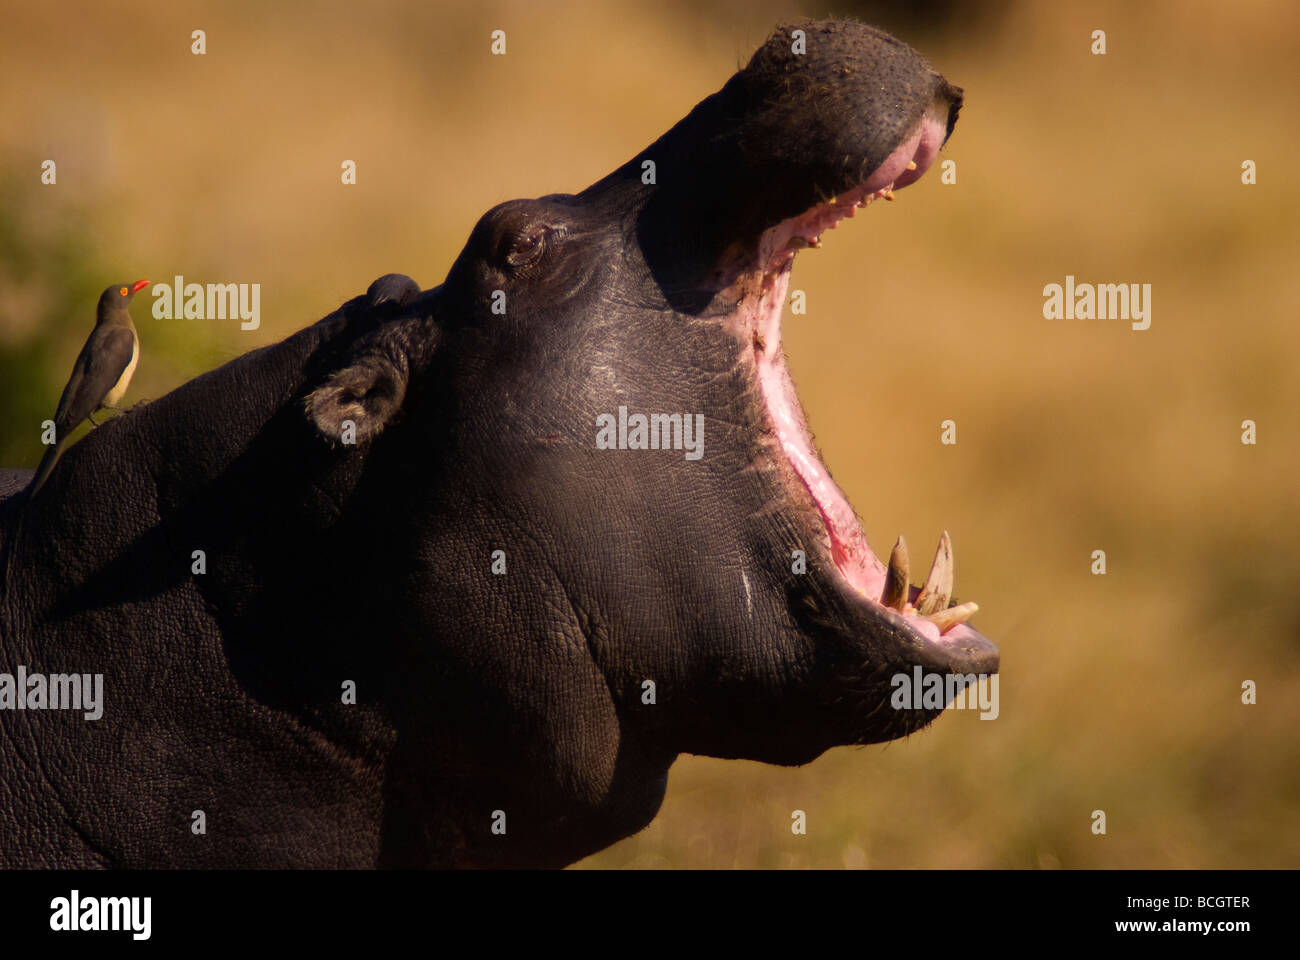 Hippopotamus yawing at Khwai river, Moremi Game Reserve, Botswana Stock Photo